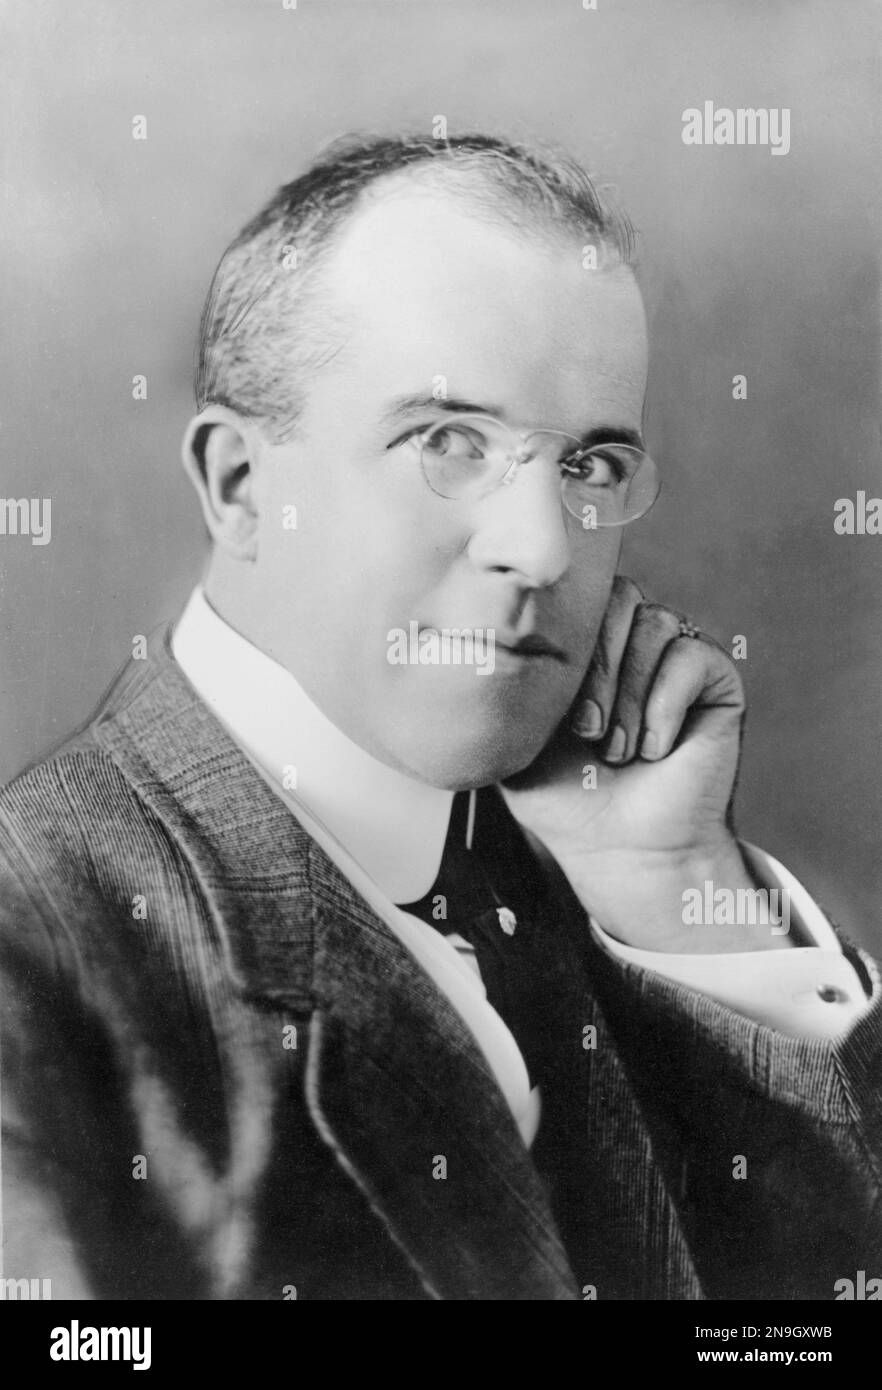 James Stuart Blackton (1875-1941), britisch-amerikanischer Filmproduzent und Regisseur der Stummzeit. Stockfoto